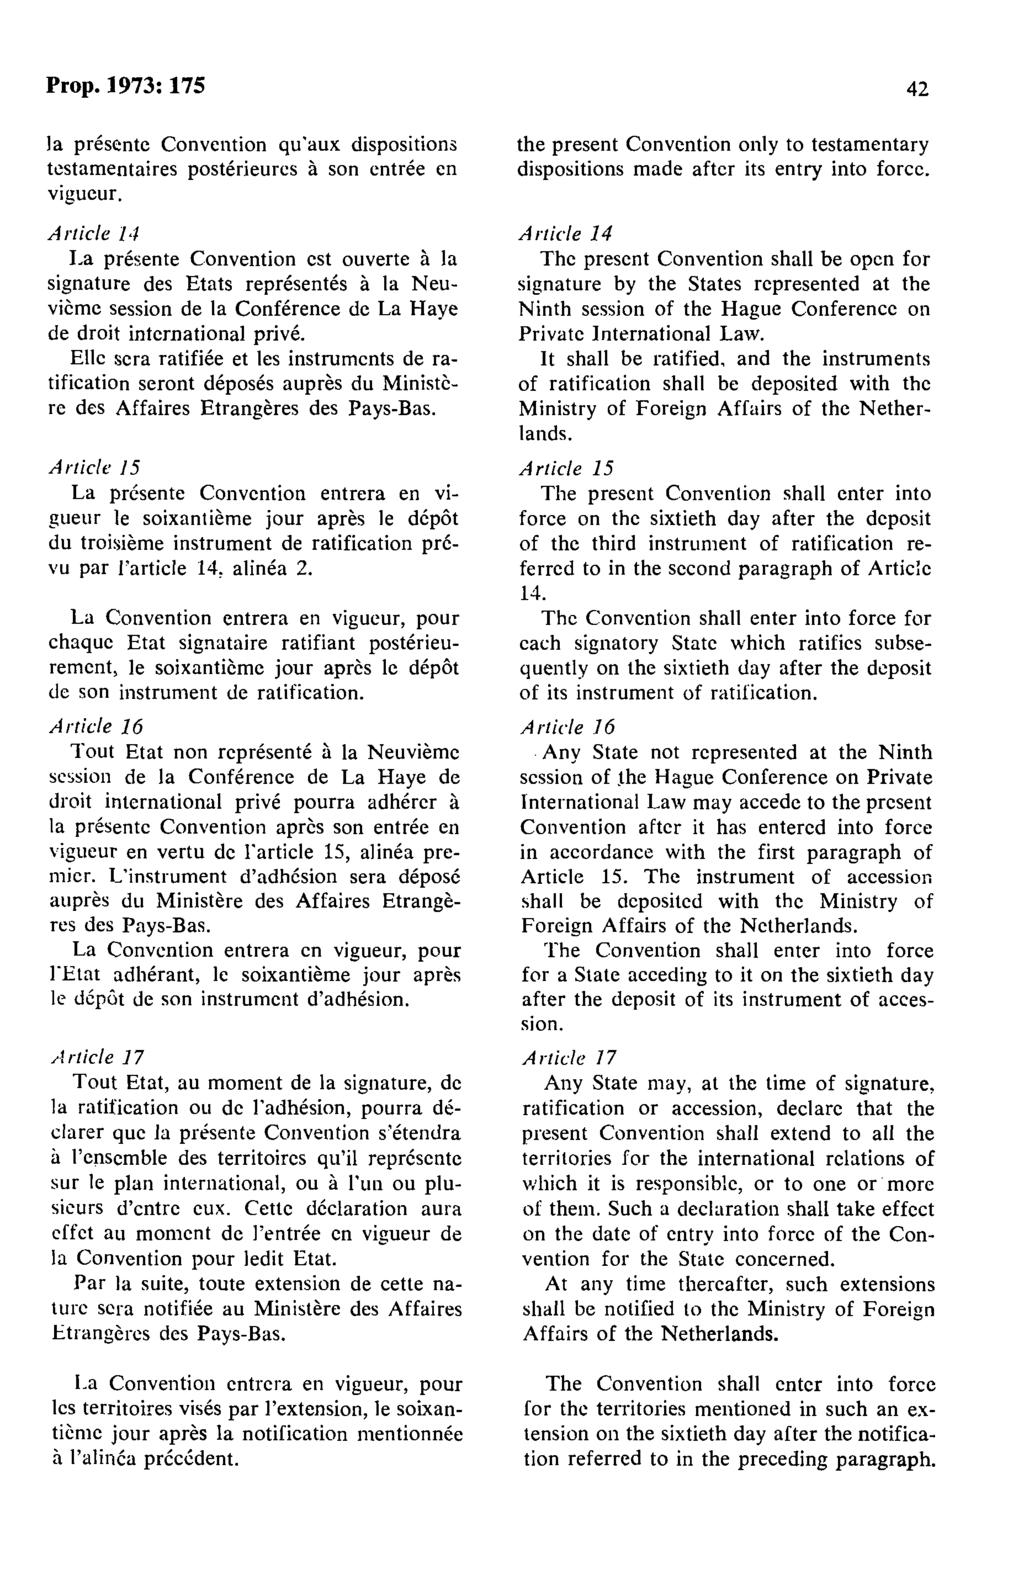 Prop.1973:175 Ja presente Convention qu'aux dispositions tcstamentaires posterieures a son entree en vigueur.